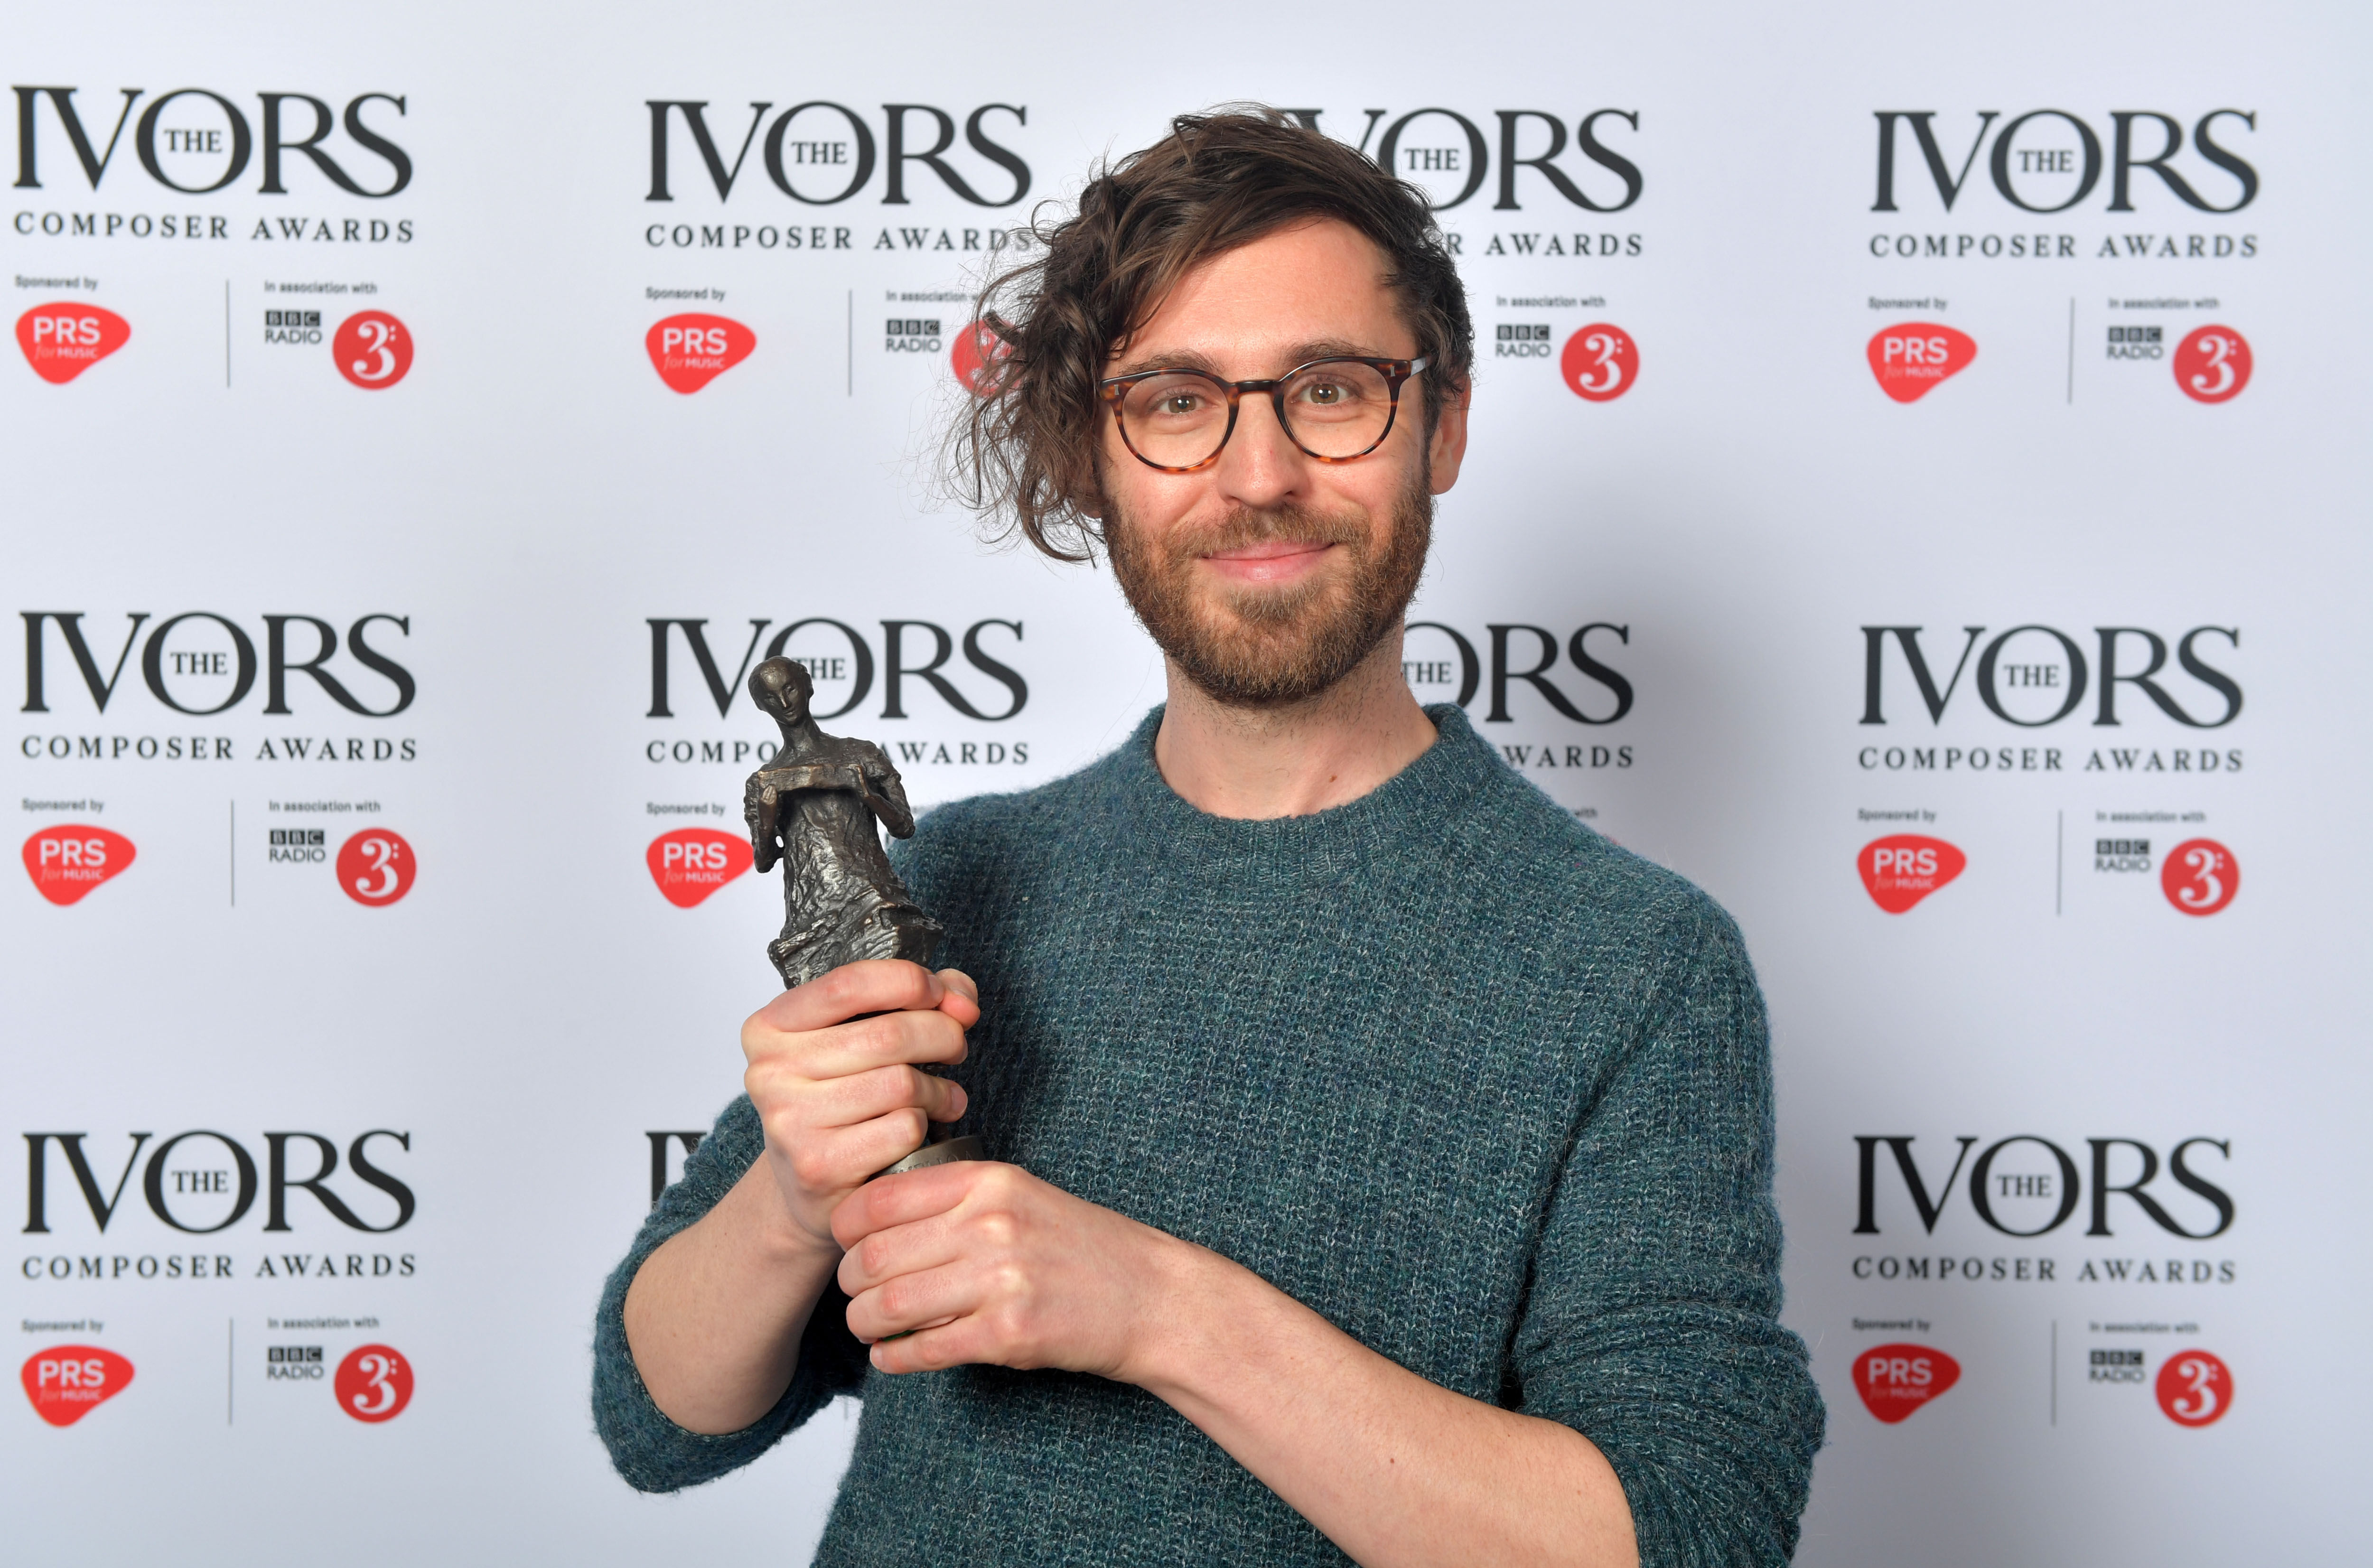 Gavin wins an Ivor Novello Award